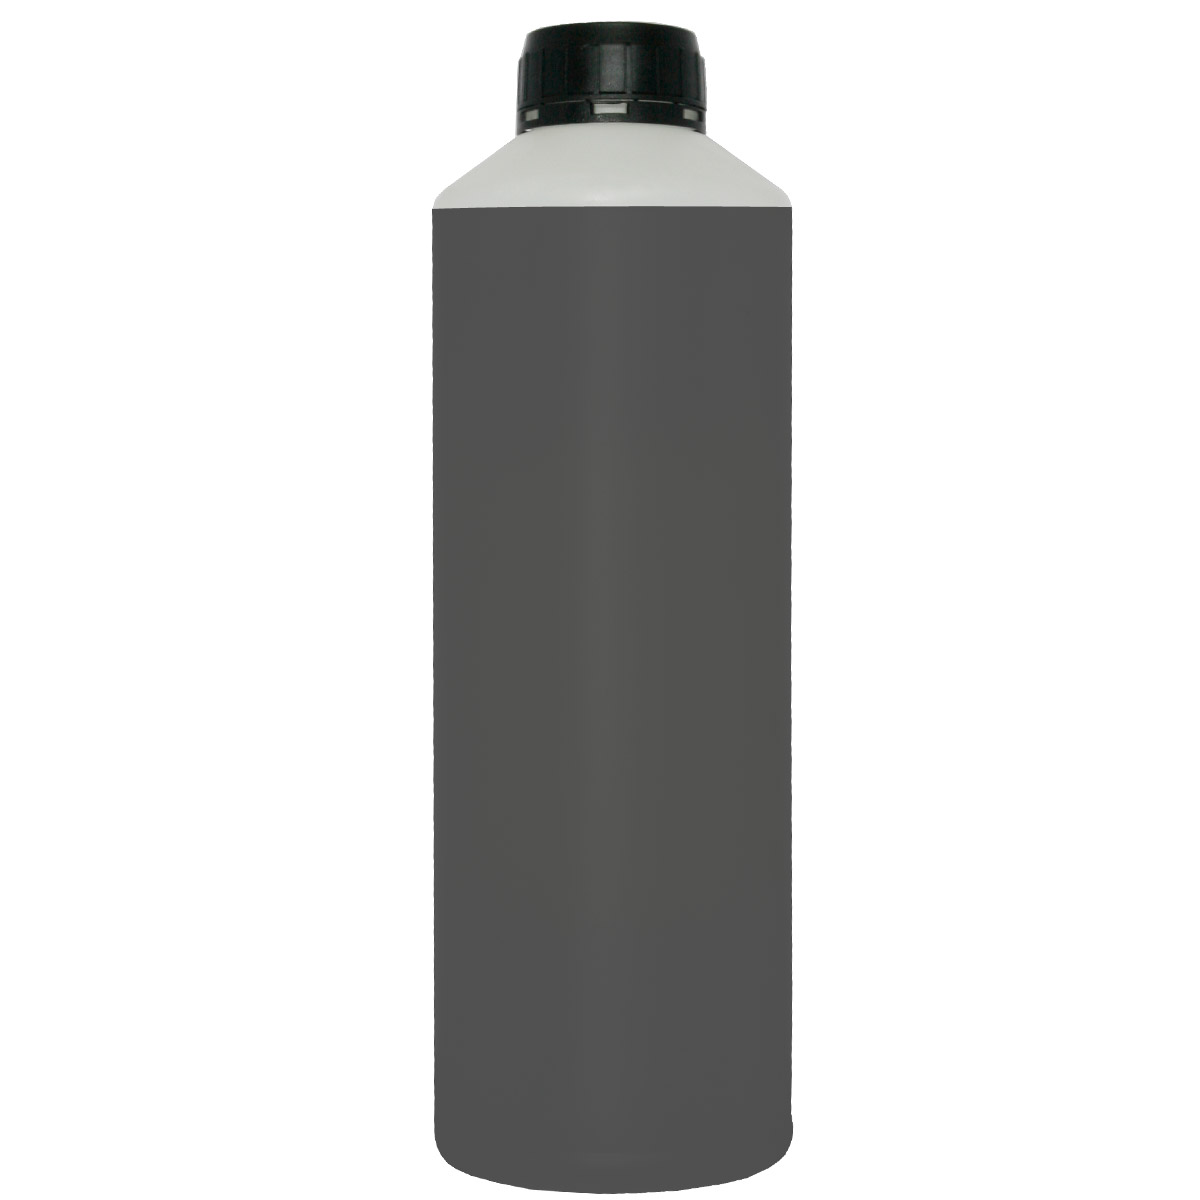 Χύμα Μελάνι για CANON BLACK 500ml inkjet refill ink μαύρο μελάνι για γέμισμα / αναγόμωση δοχείου εκτυπωτή ( ink cartridge ) inkjet